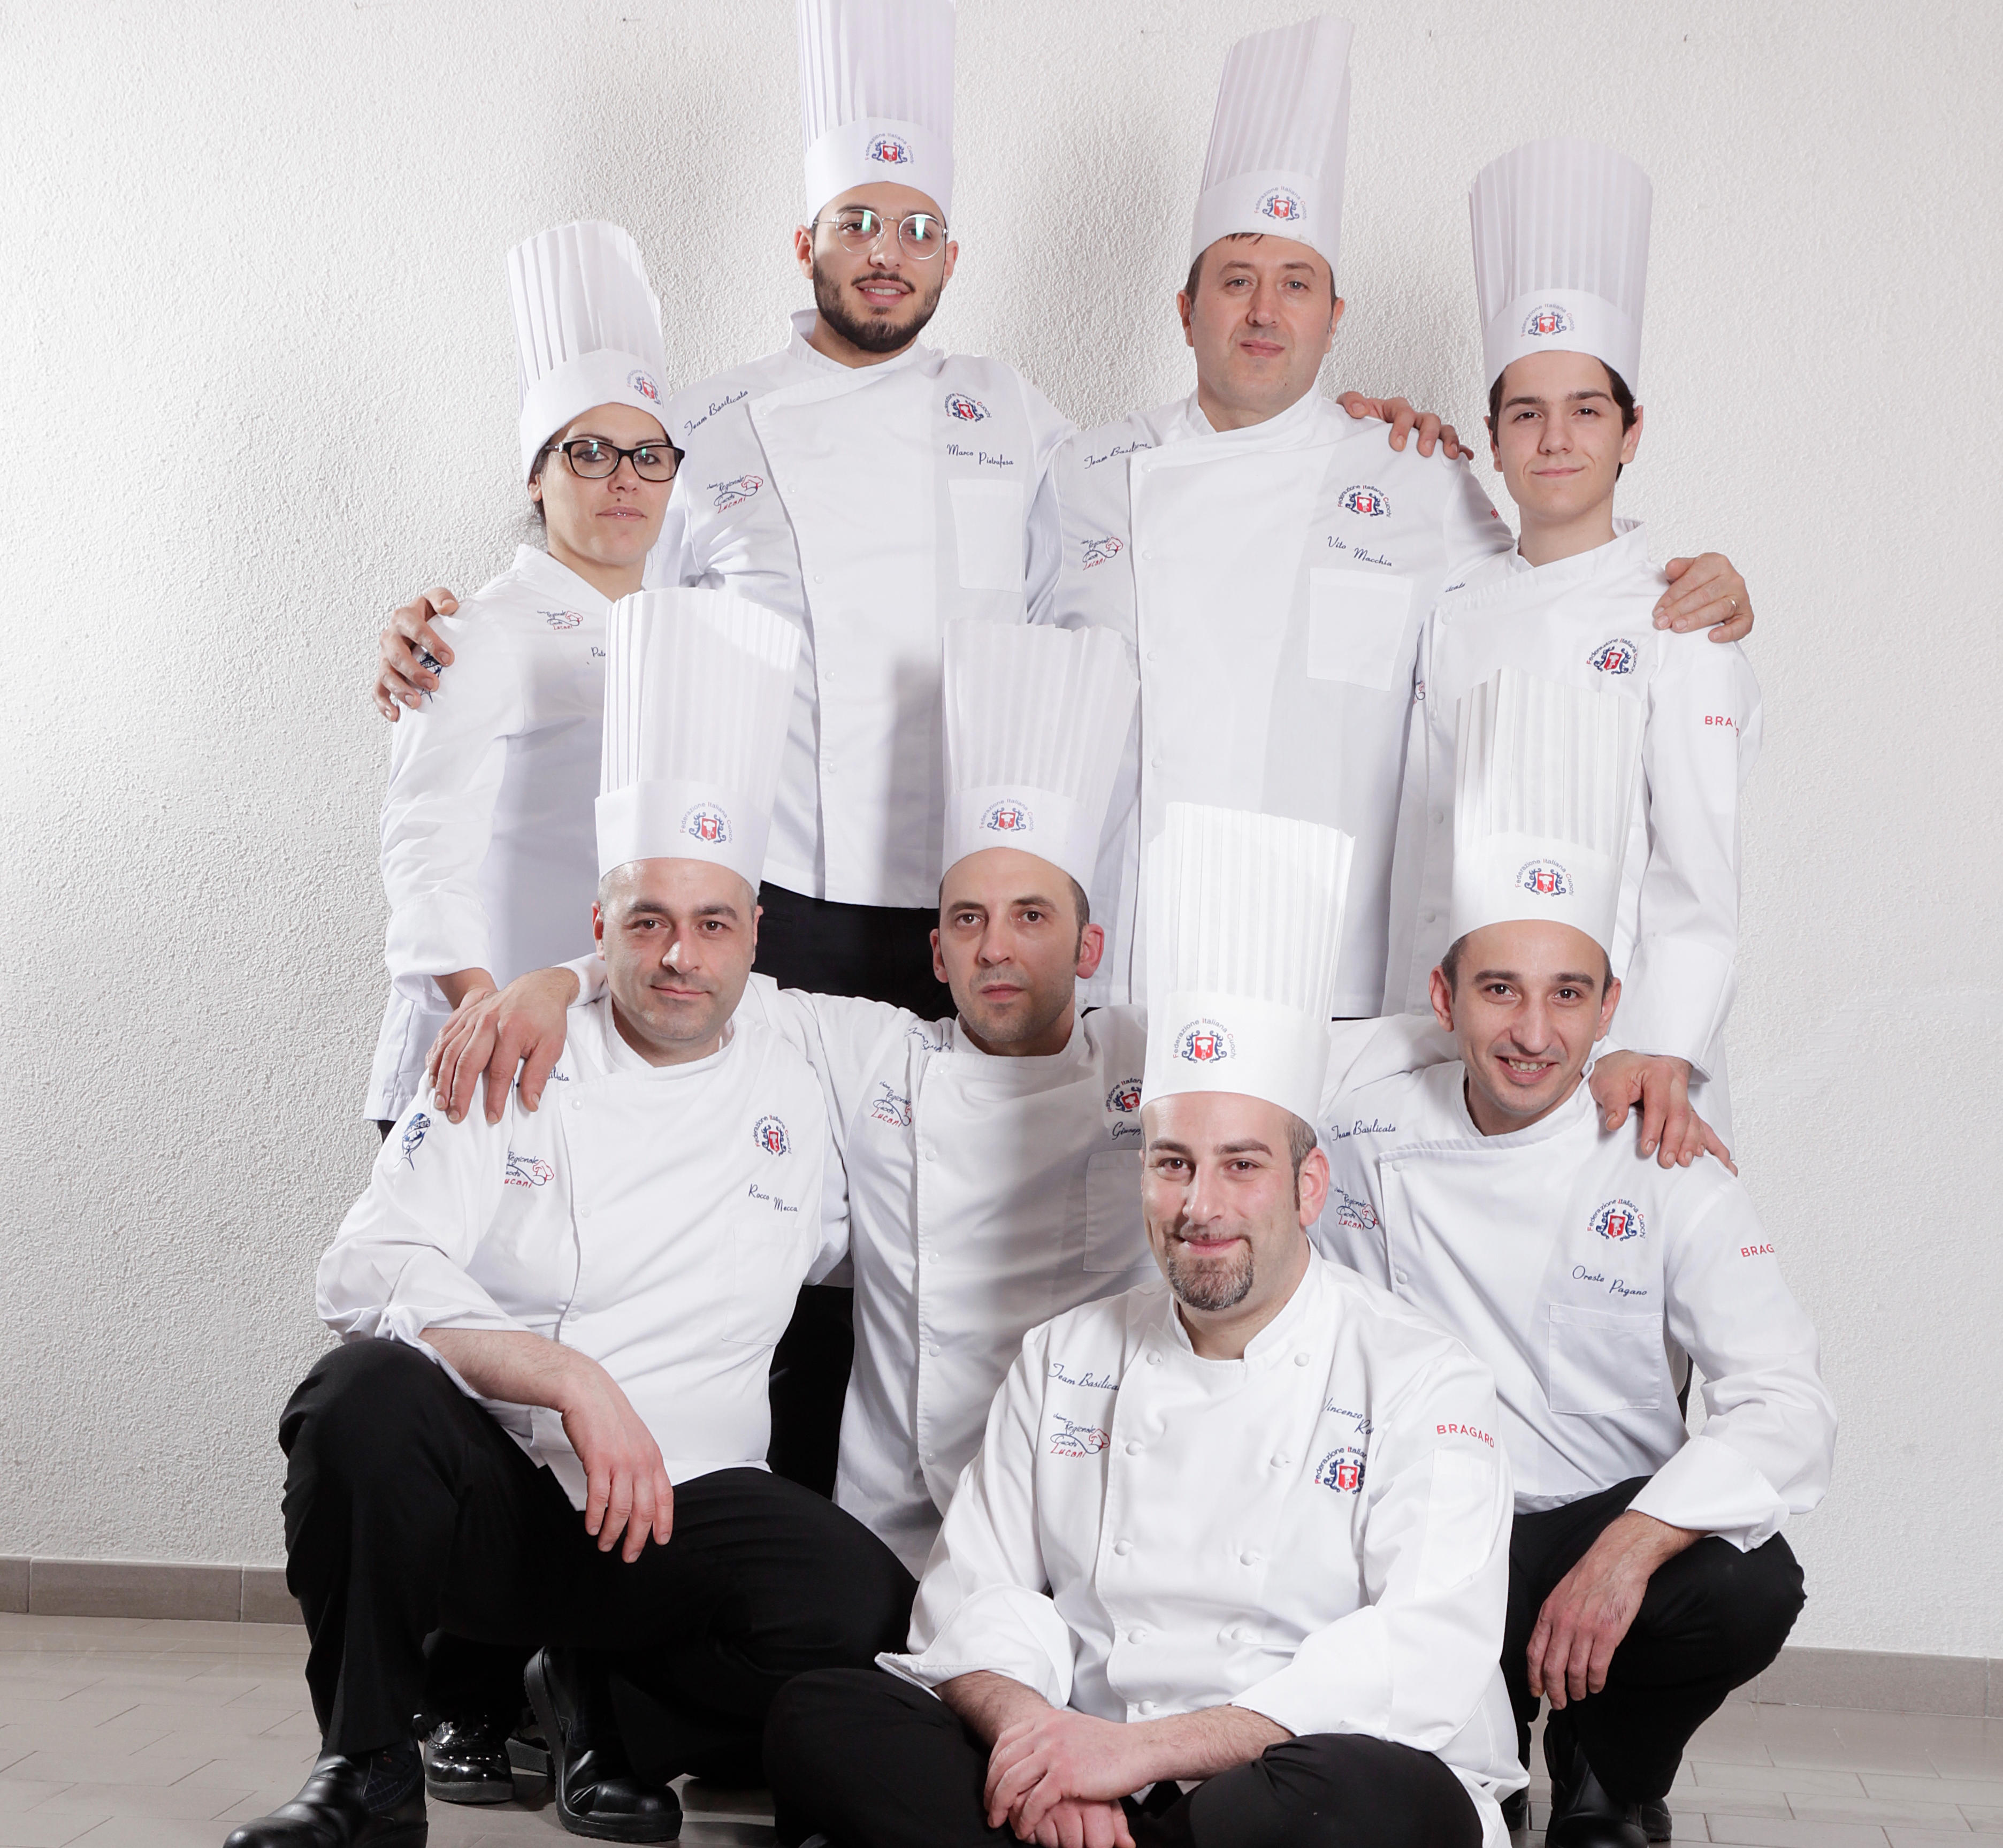 Il Team Basilicata vincitore della medaglia d'oro ai Campionati italiani di cucina a Rimini